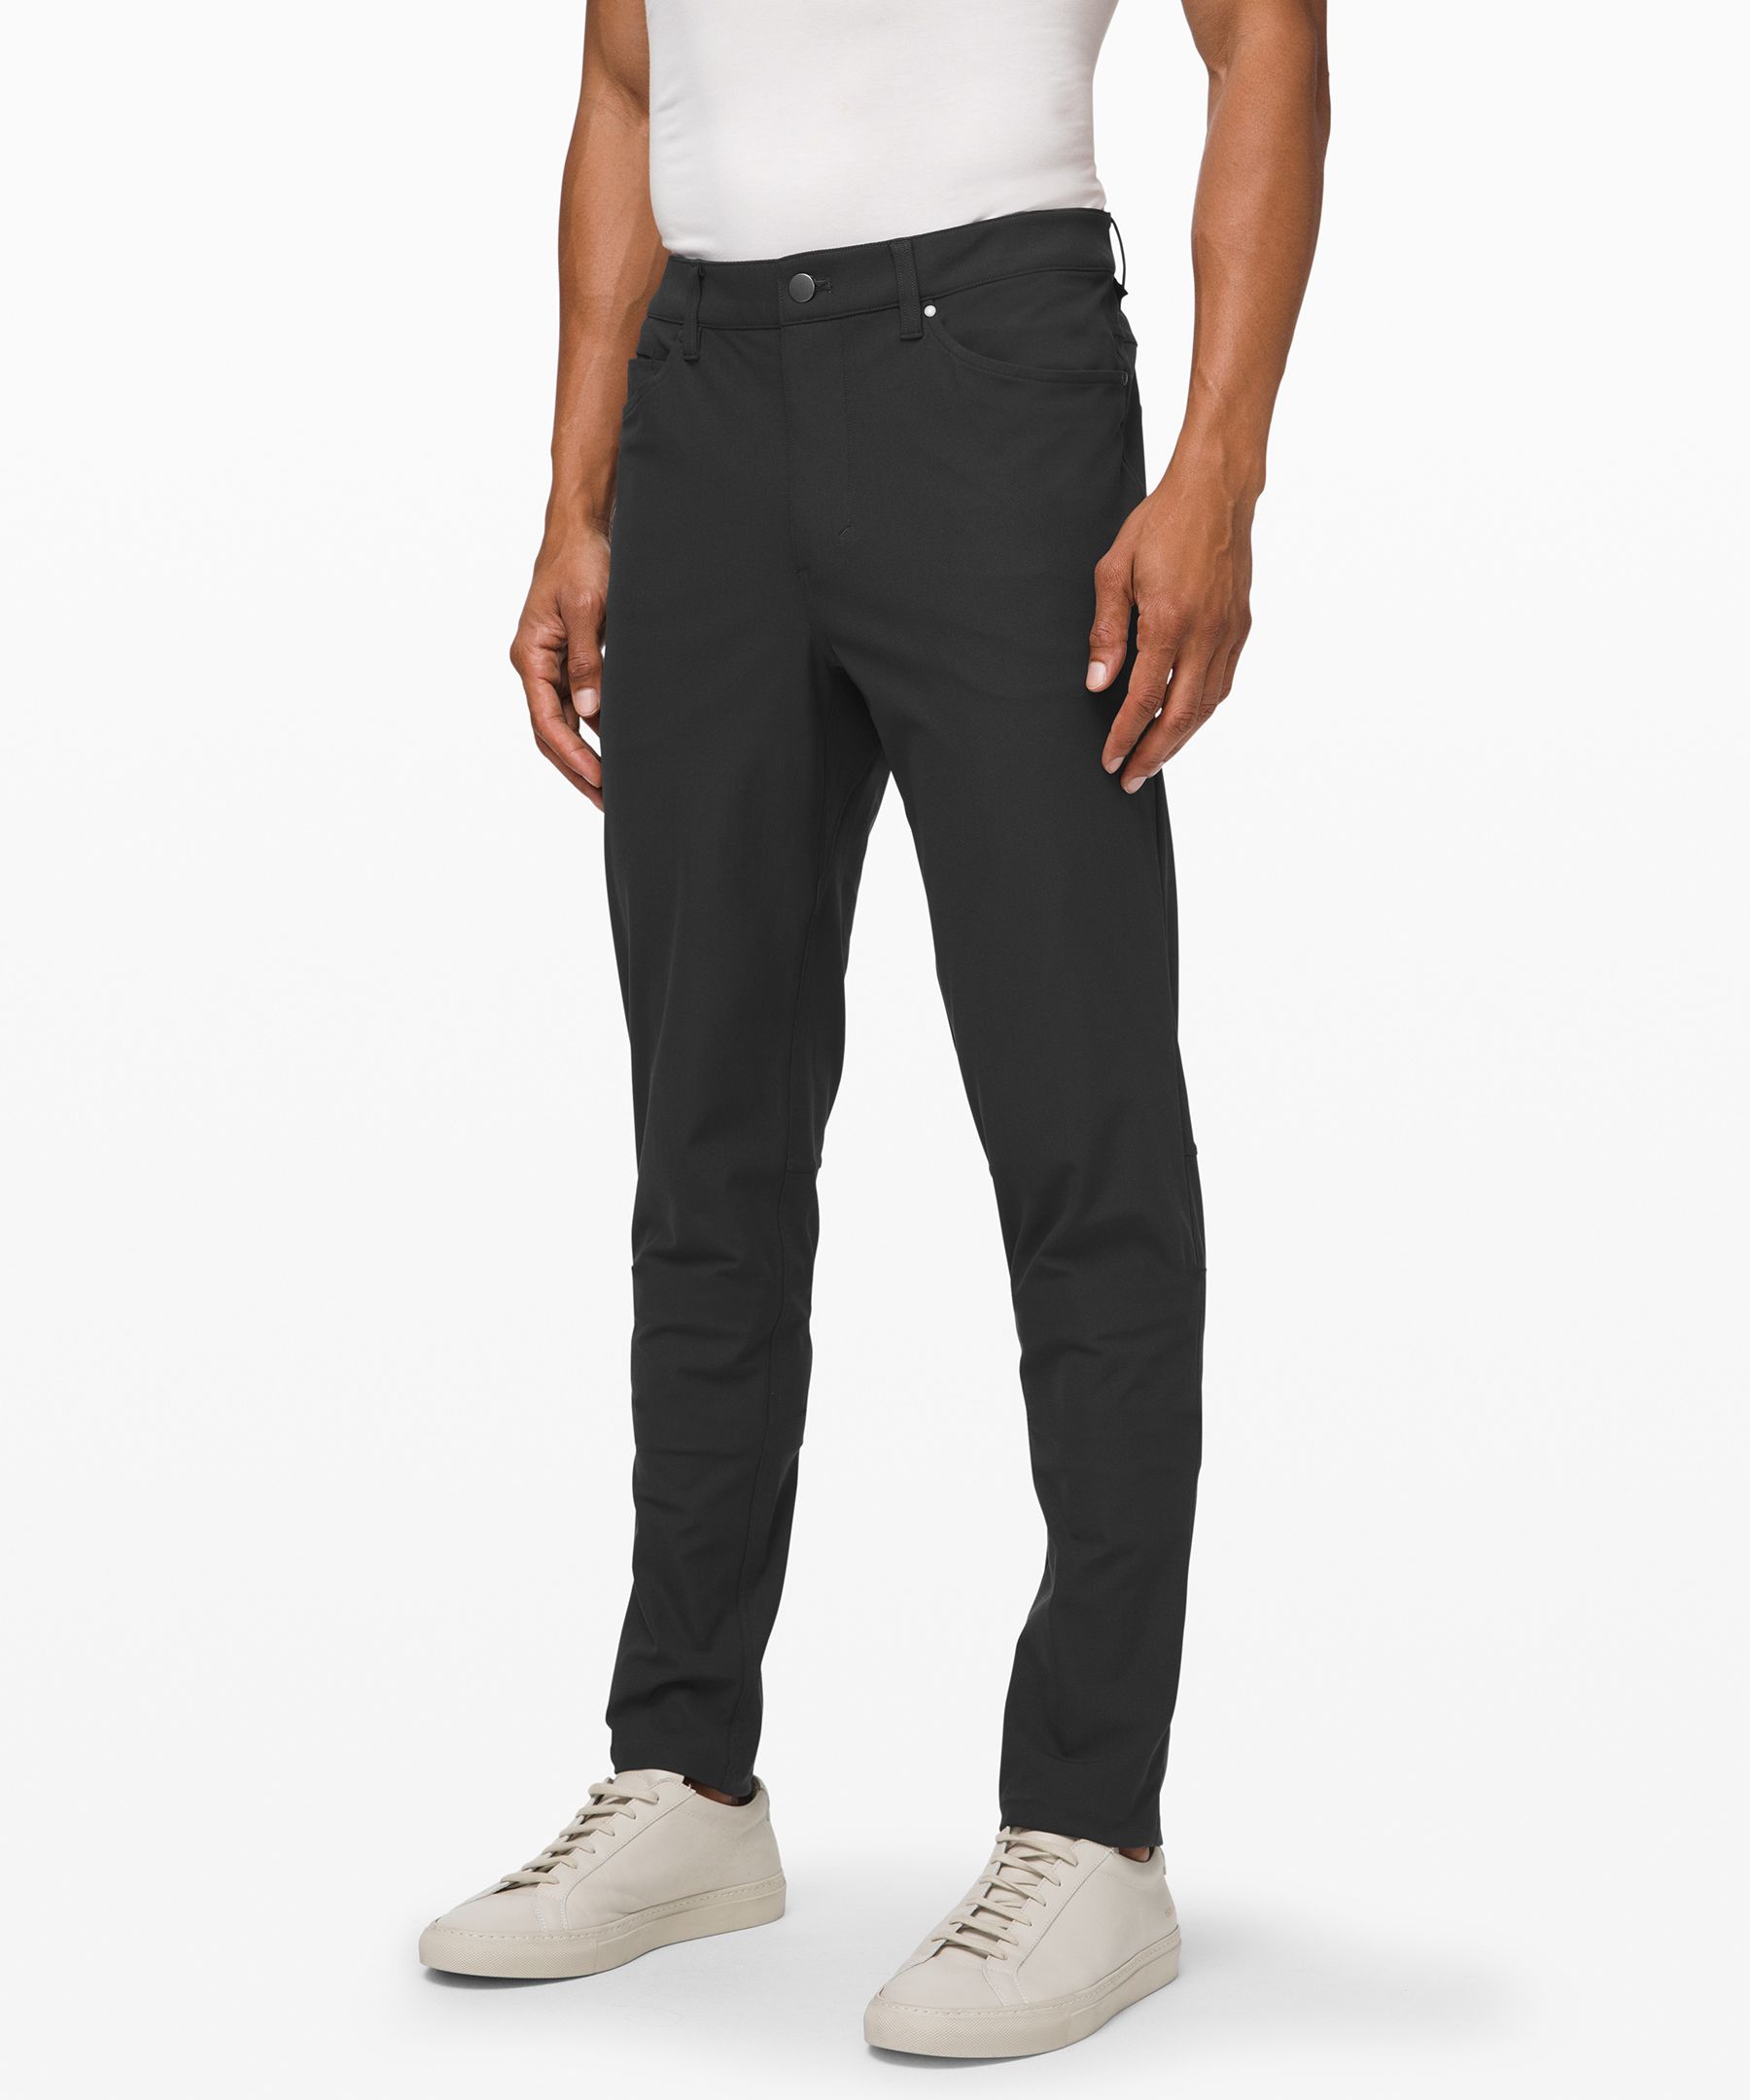 ABC Slim-Fit 5 Pocket Pant 37"L *Warpstreme | Men's Trousers